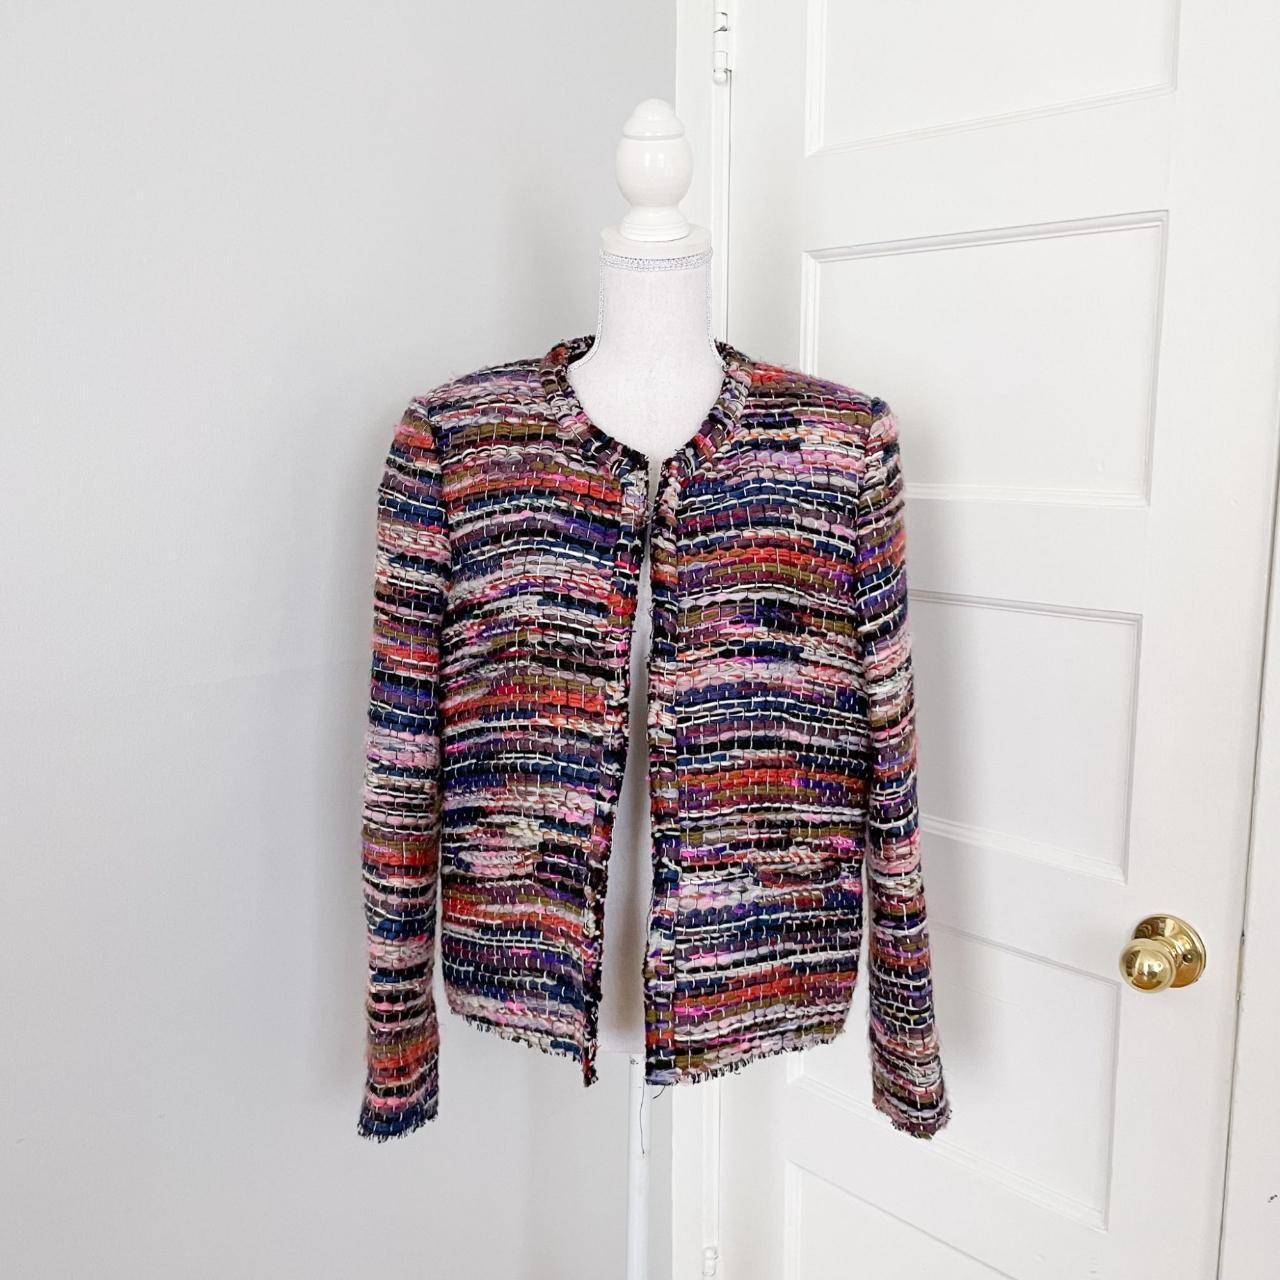 Product Image 1 - Iro Namanta Multicolor Tweed Jacket
Size